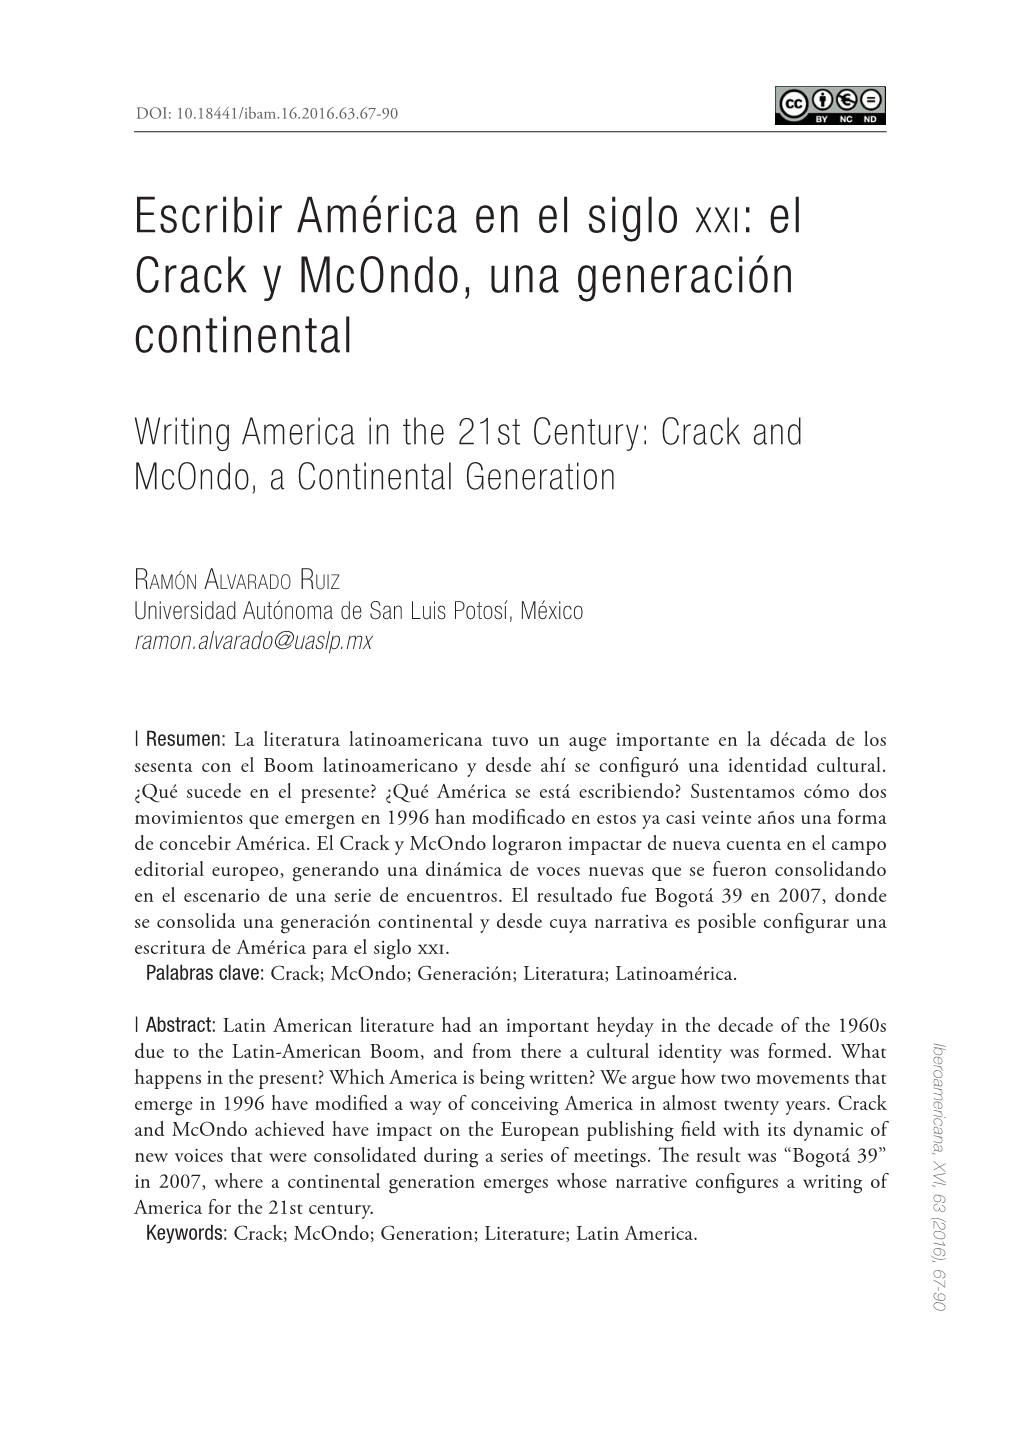 Escribir América En El Siglo XXI: El Crack Y Mcondo, Una Generación Continental